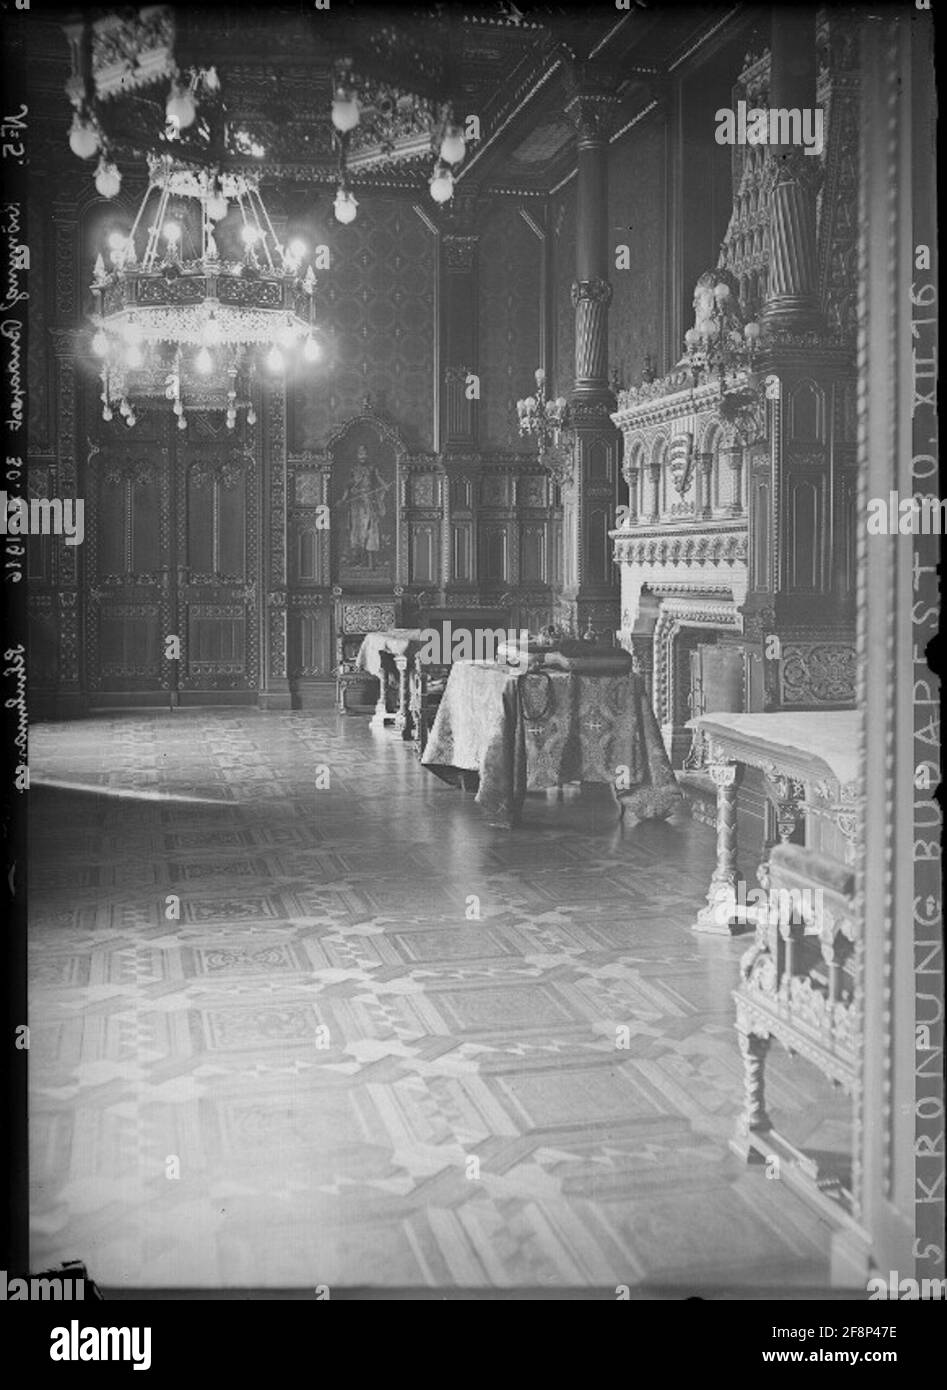 Incoronazione dell'imperatore Carlo a Budapest incoronazione al re d'Ungheria (Karl IV) Le insegne reali nel castello reale. Foto Stock